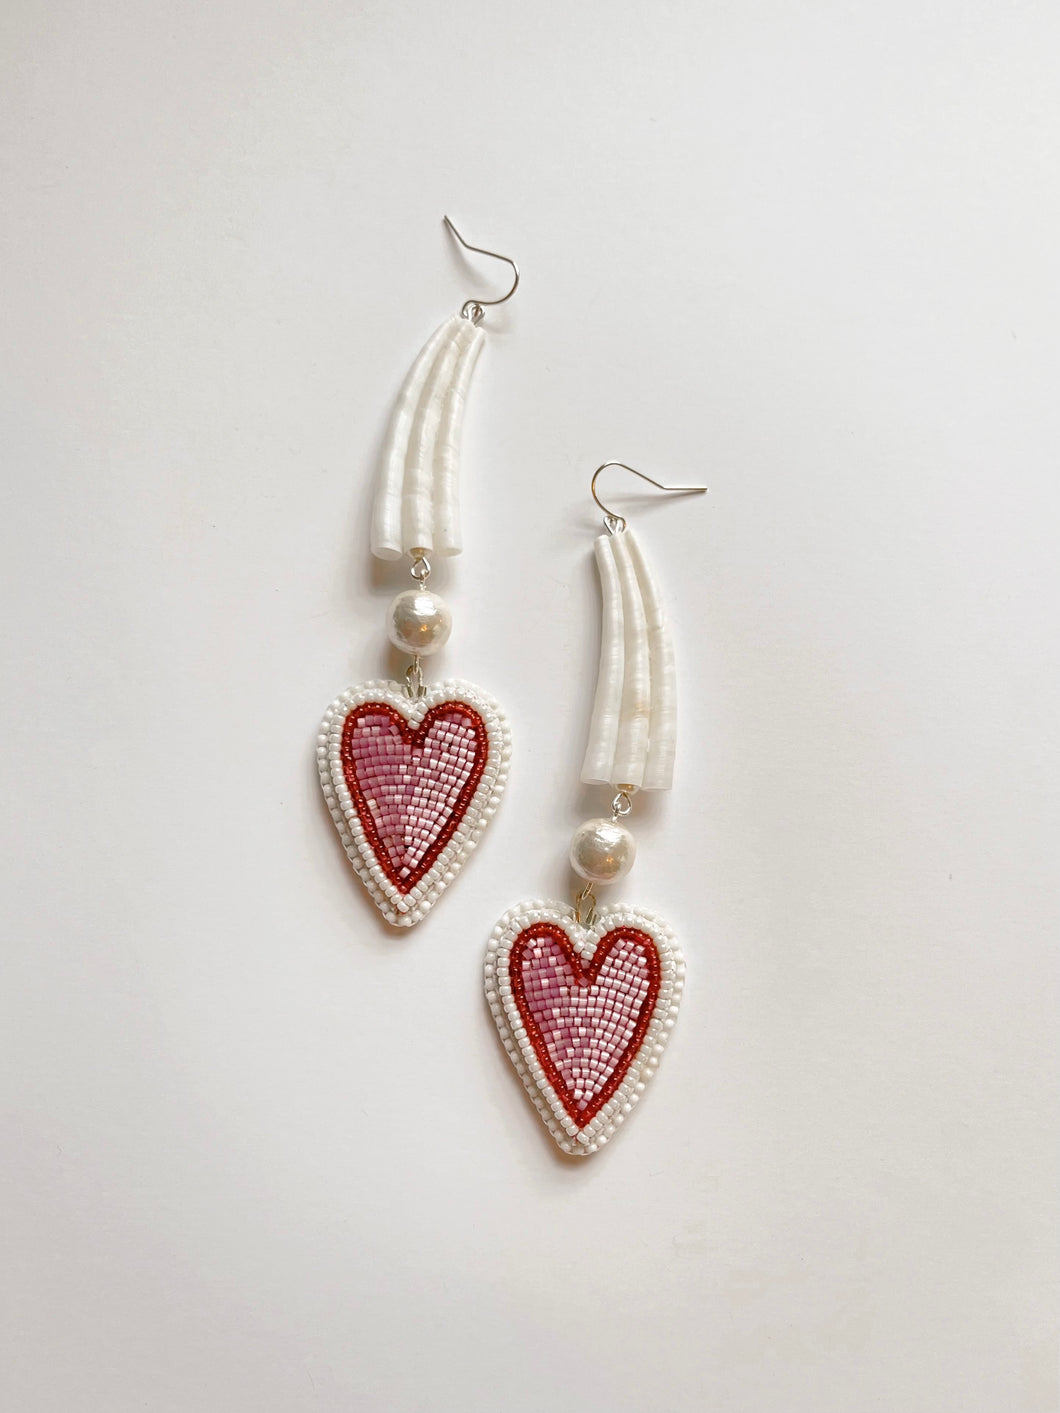 Noo-lue chek (Sweetheart) Earrings